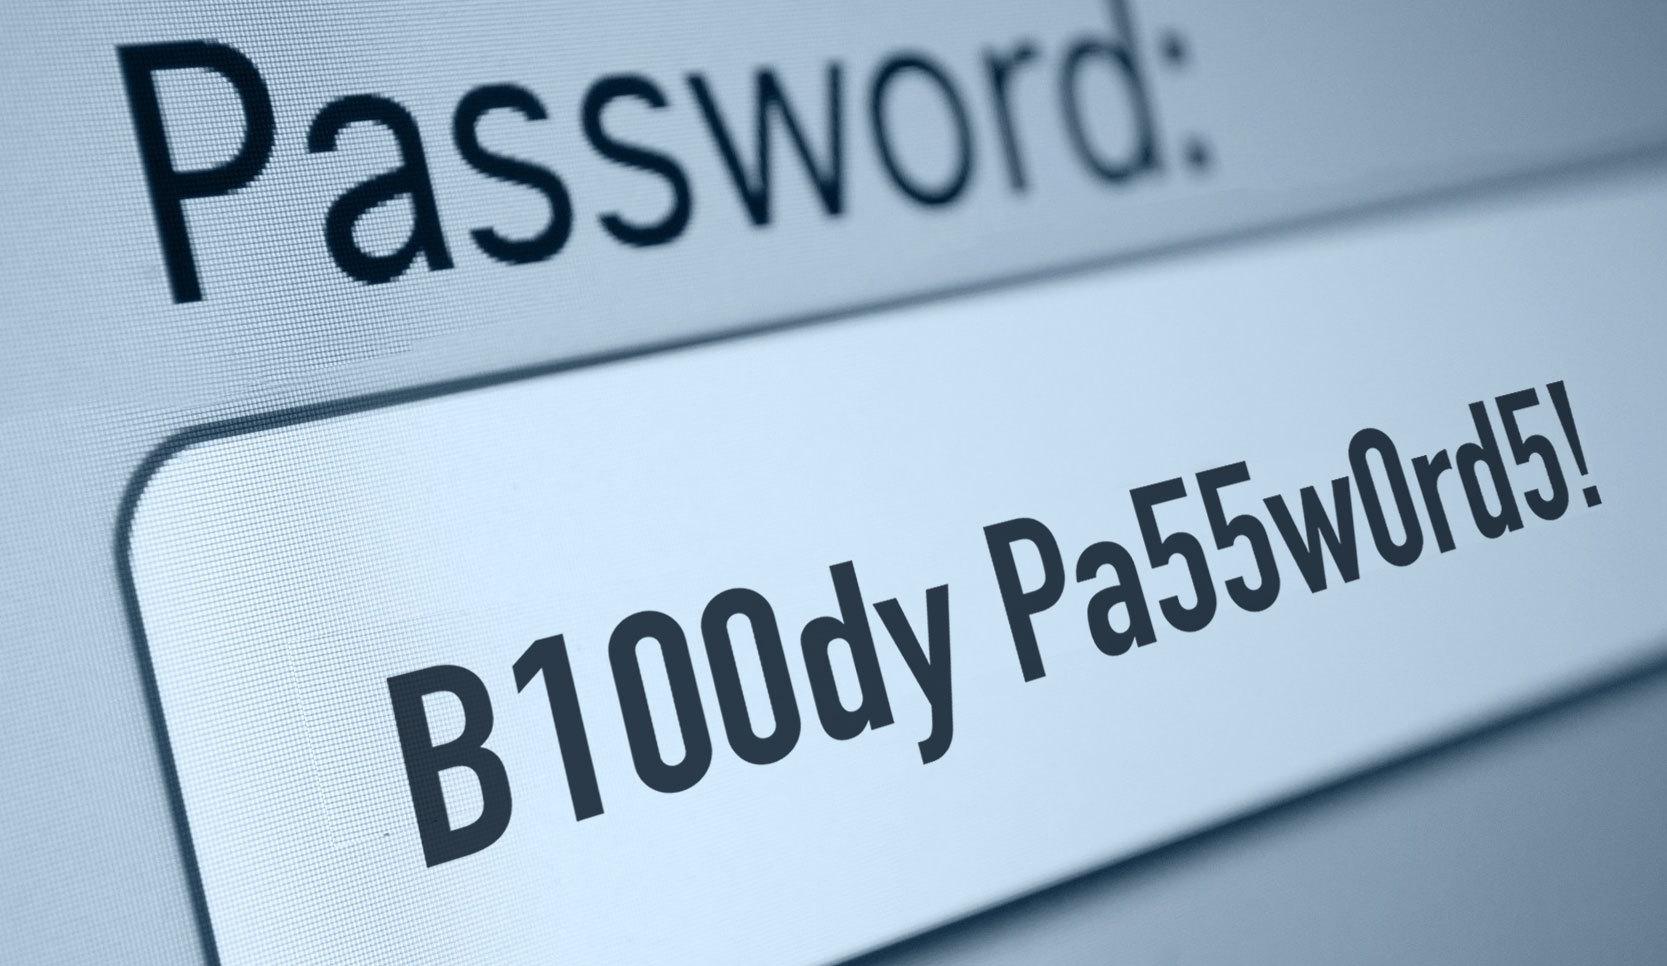 Passwordsjpg